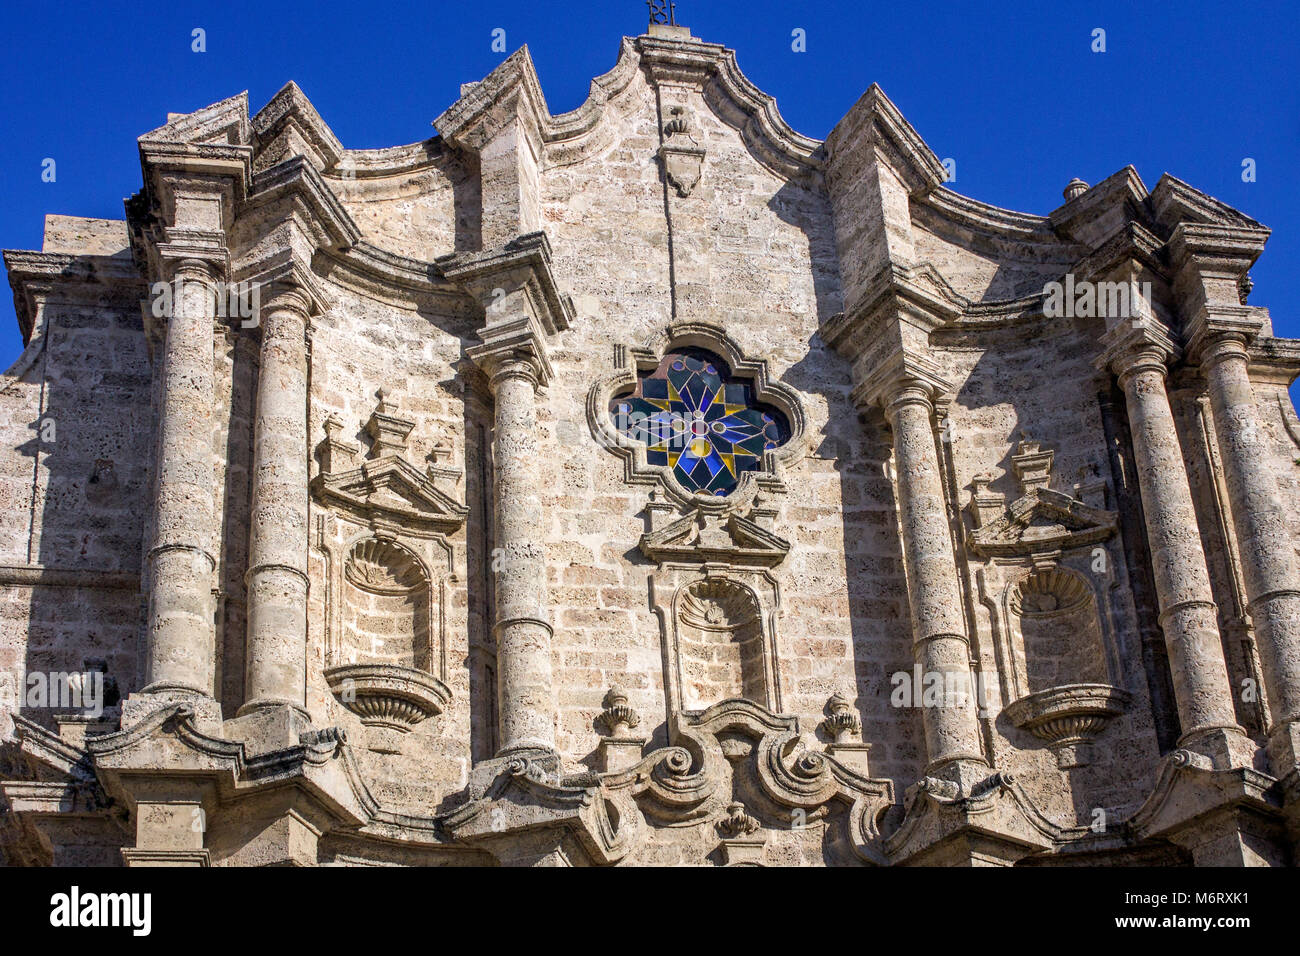 La Catedral de la Virgen María de la Concepción Inmaculada de La Habana - facade Stock Photo